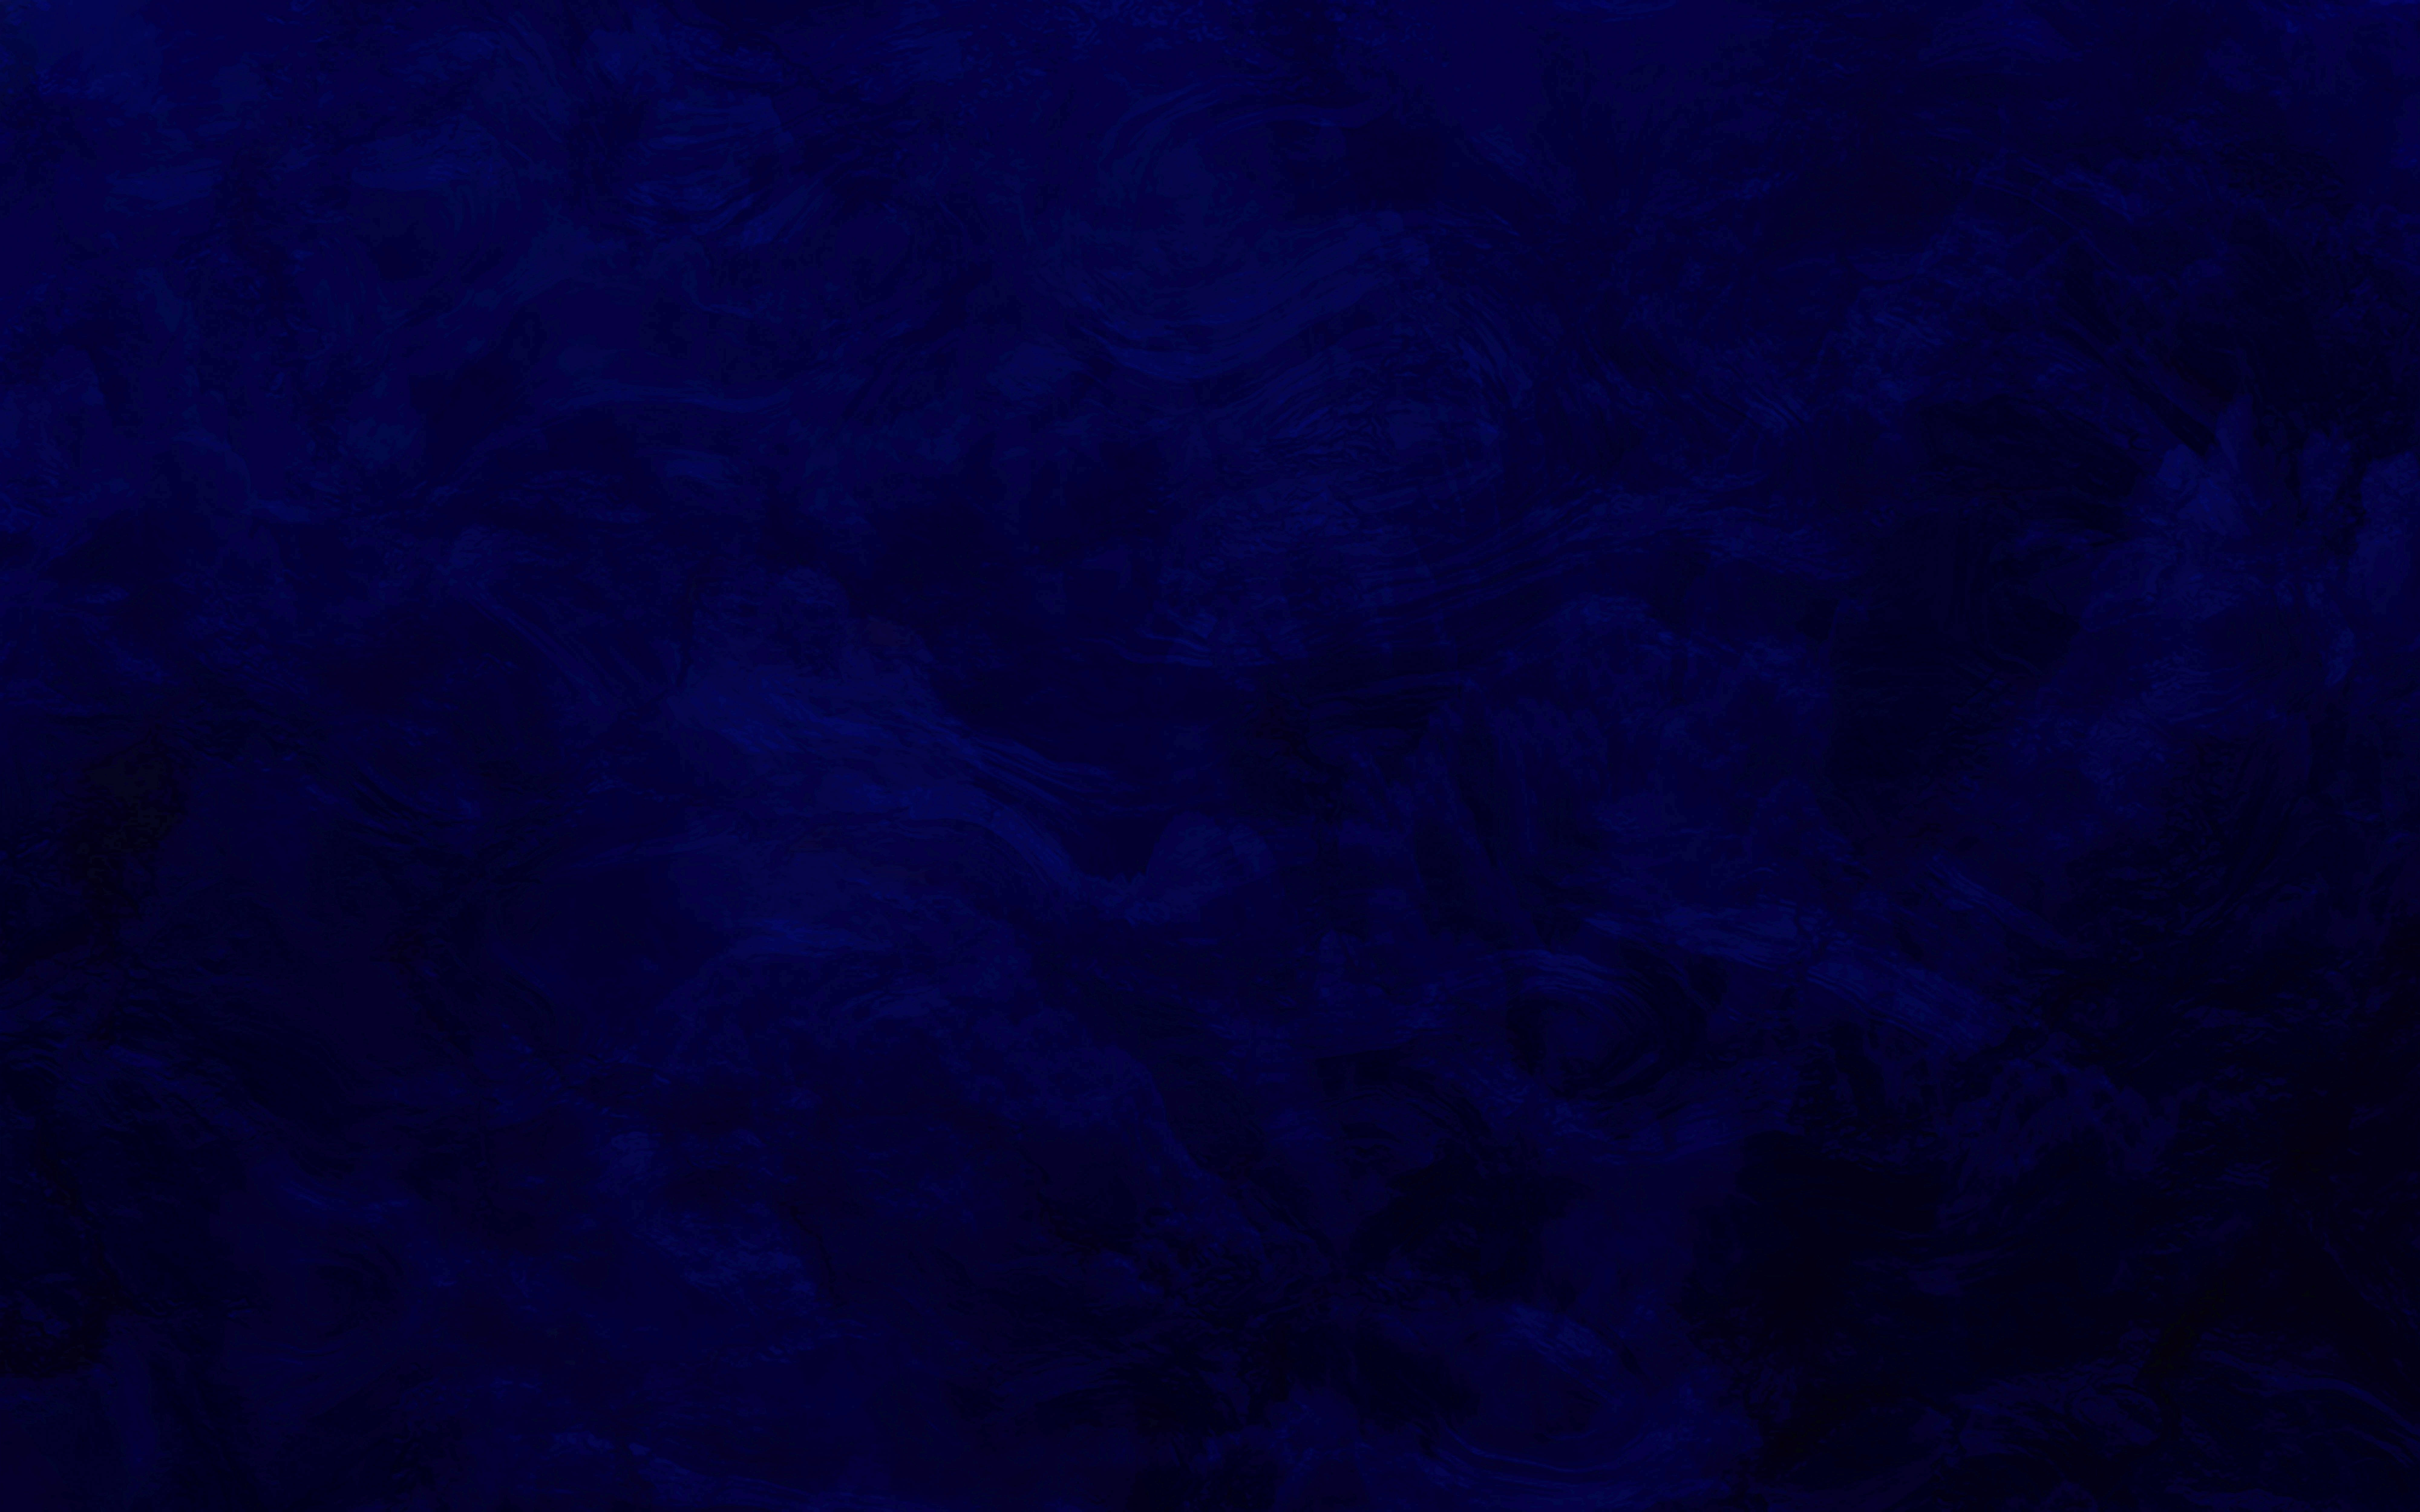 background dark blue texture